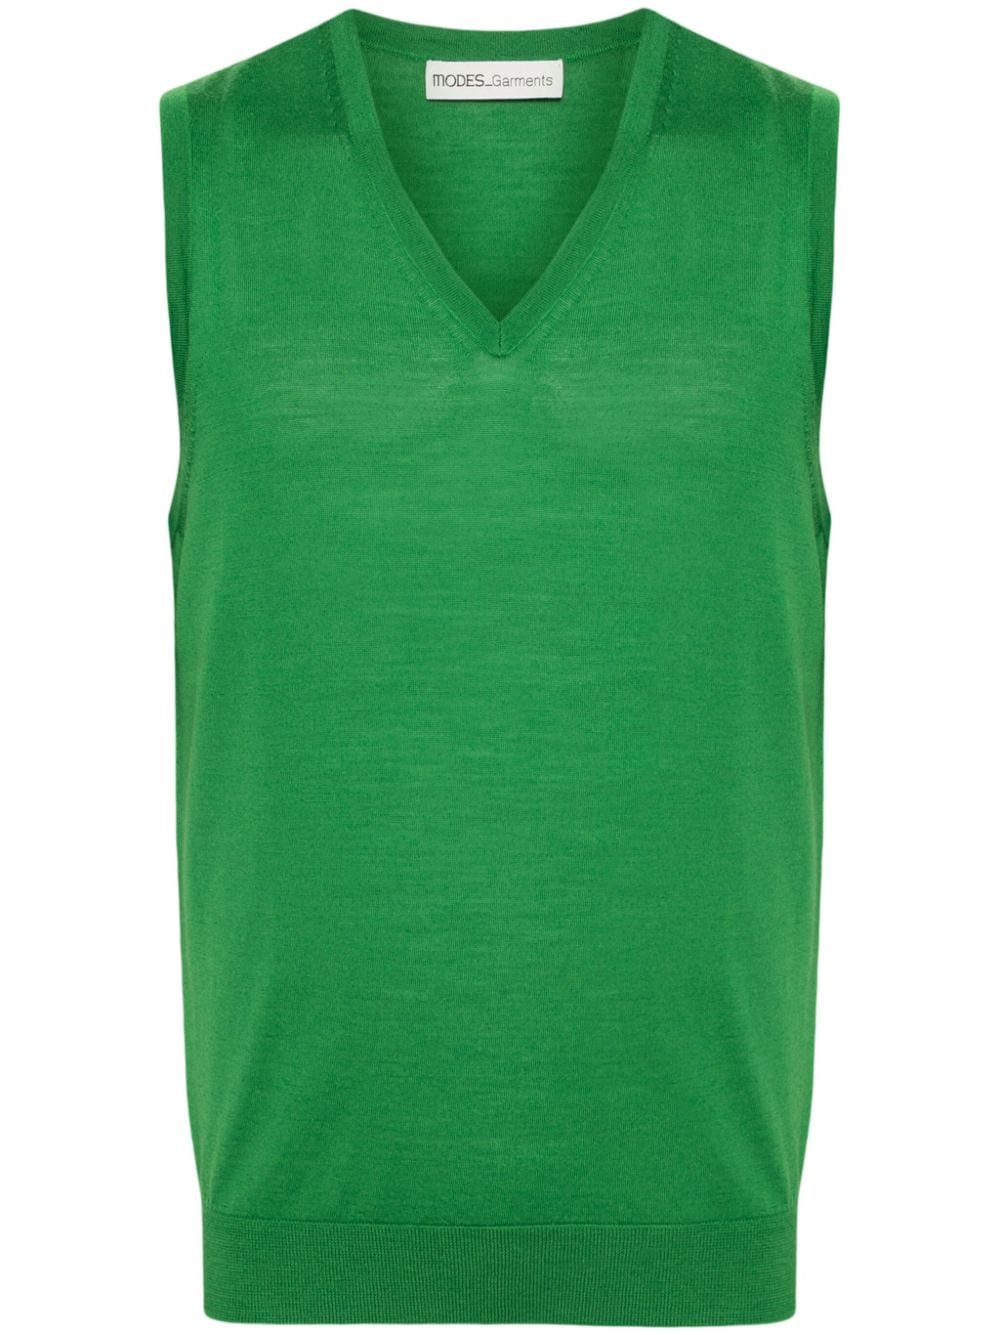 Modes Garments Sleeveless Merino Knitted Vest In Green